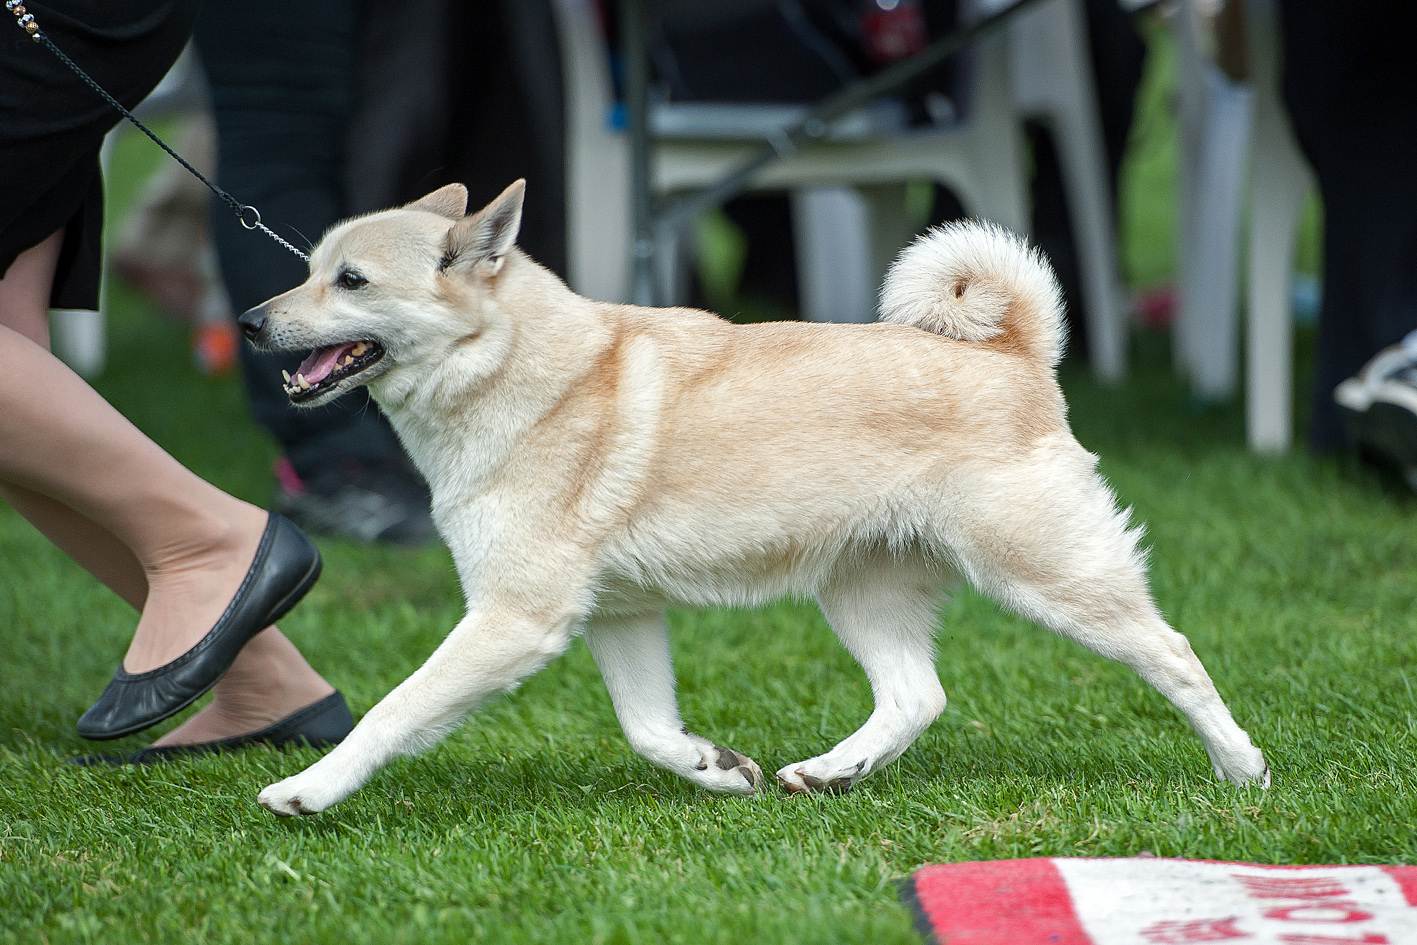 Описание породы собак норвежский элкхаунд: характер, уход, предназначение